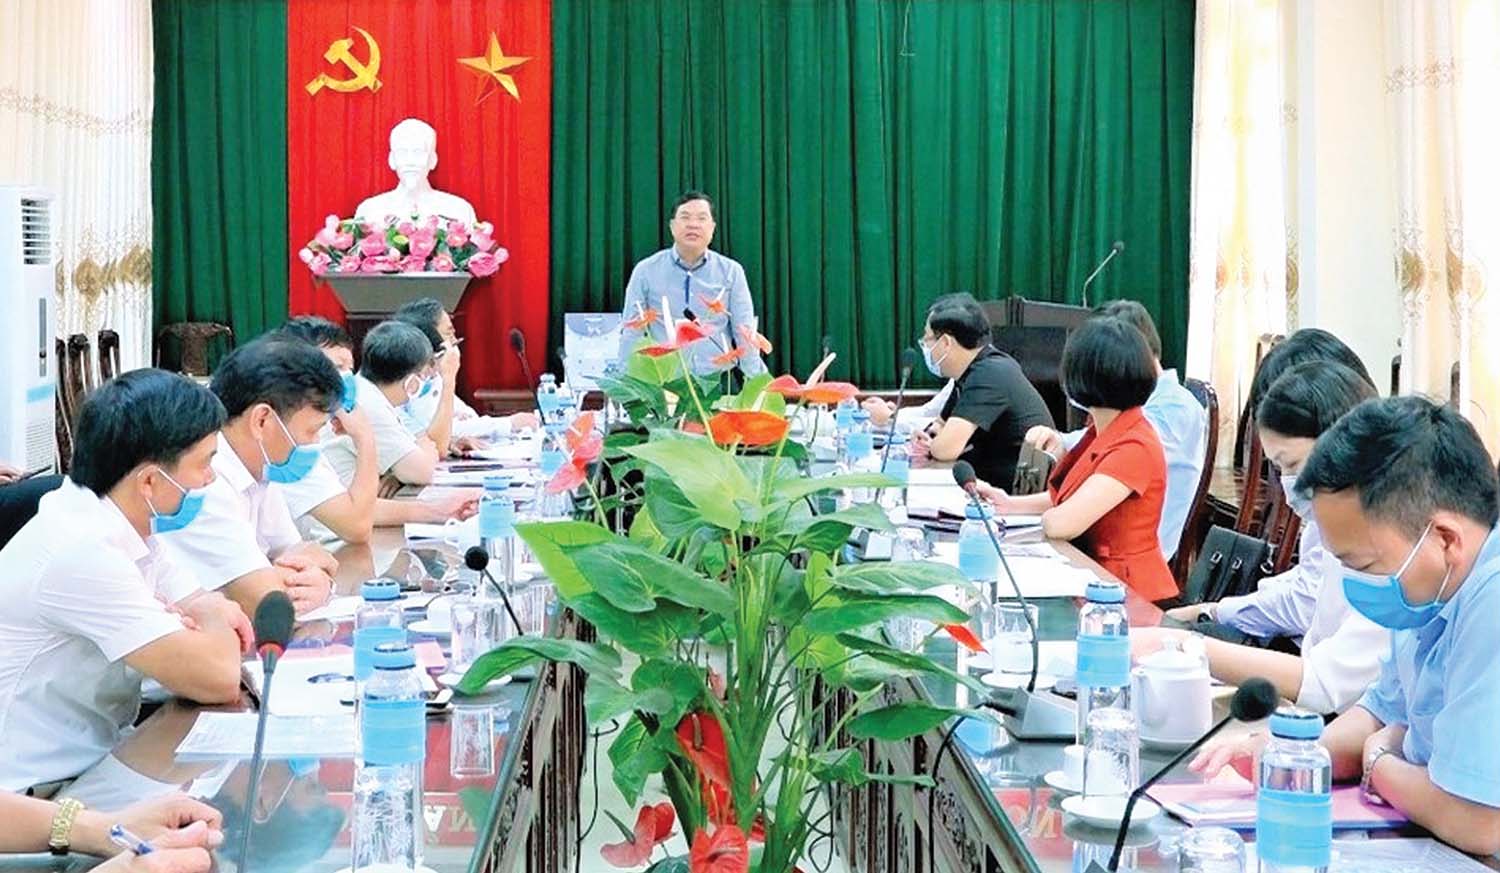 Ủy viên Trung ương Đảng, Bí thư Tỉnh ủy Nam Định Phạm Gia Túc làm việc với lãnh đạo huyện Xuân Trường về phát triển kinh tế - xã hội và xây dựng nông thôn mới nâng cao, kiểu mẫu